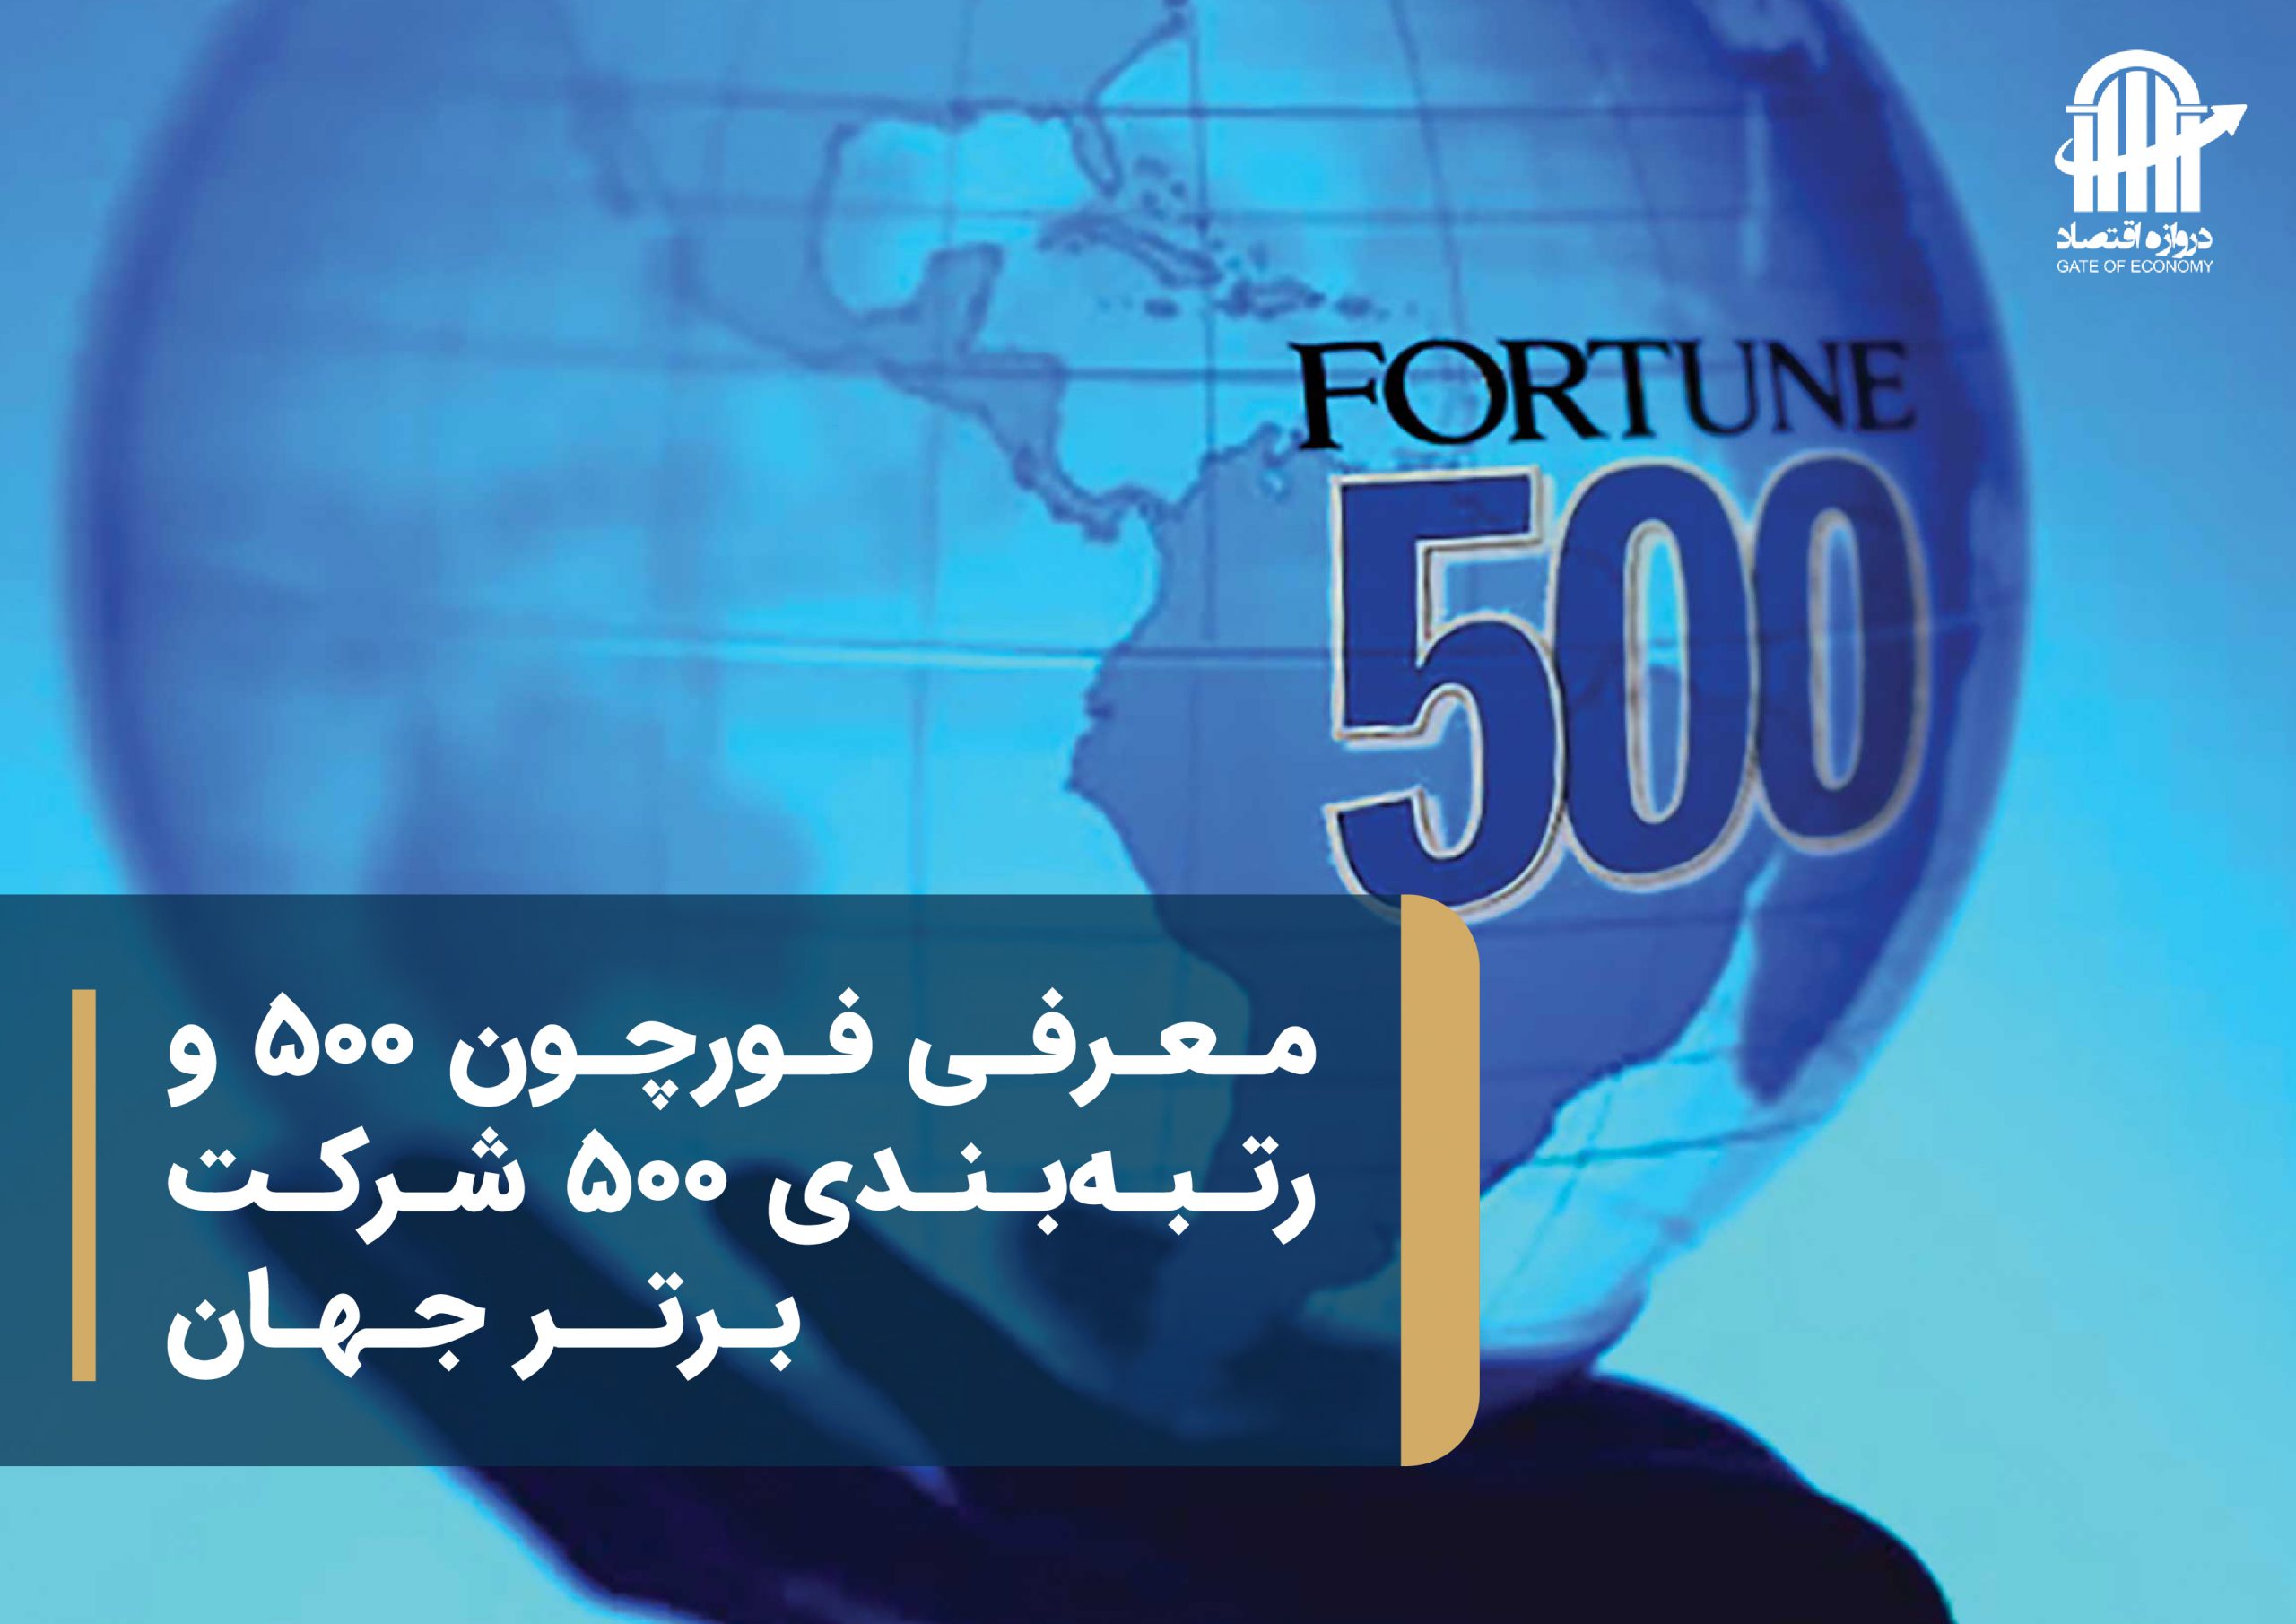 معرفی فورچون جهانی 500 و رتبه بندی 500 شرکت برتر جهان